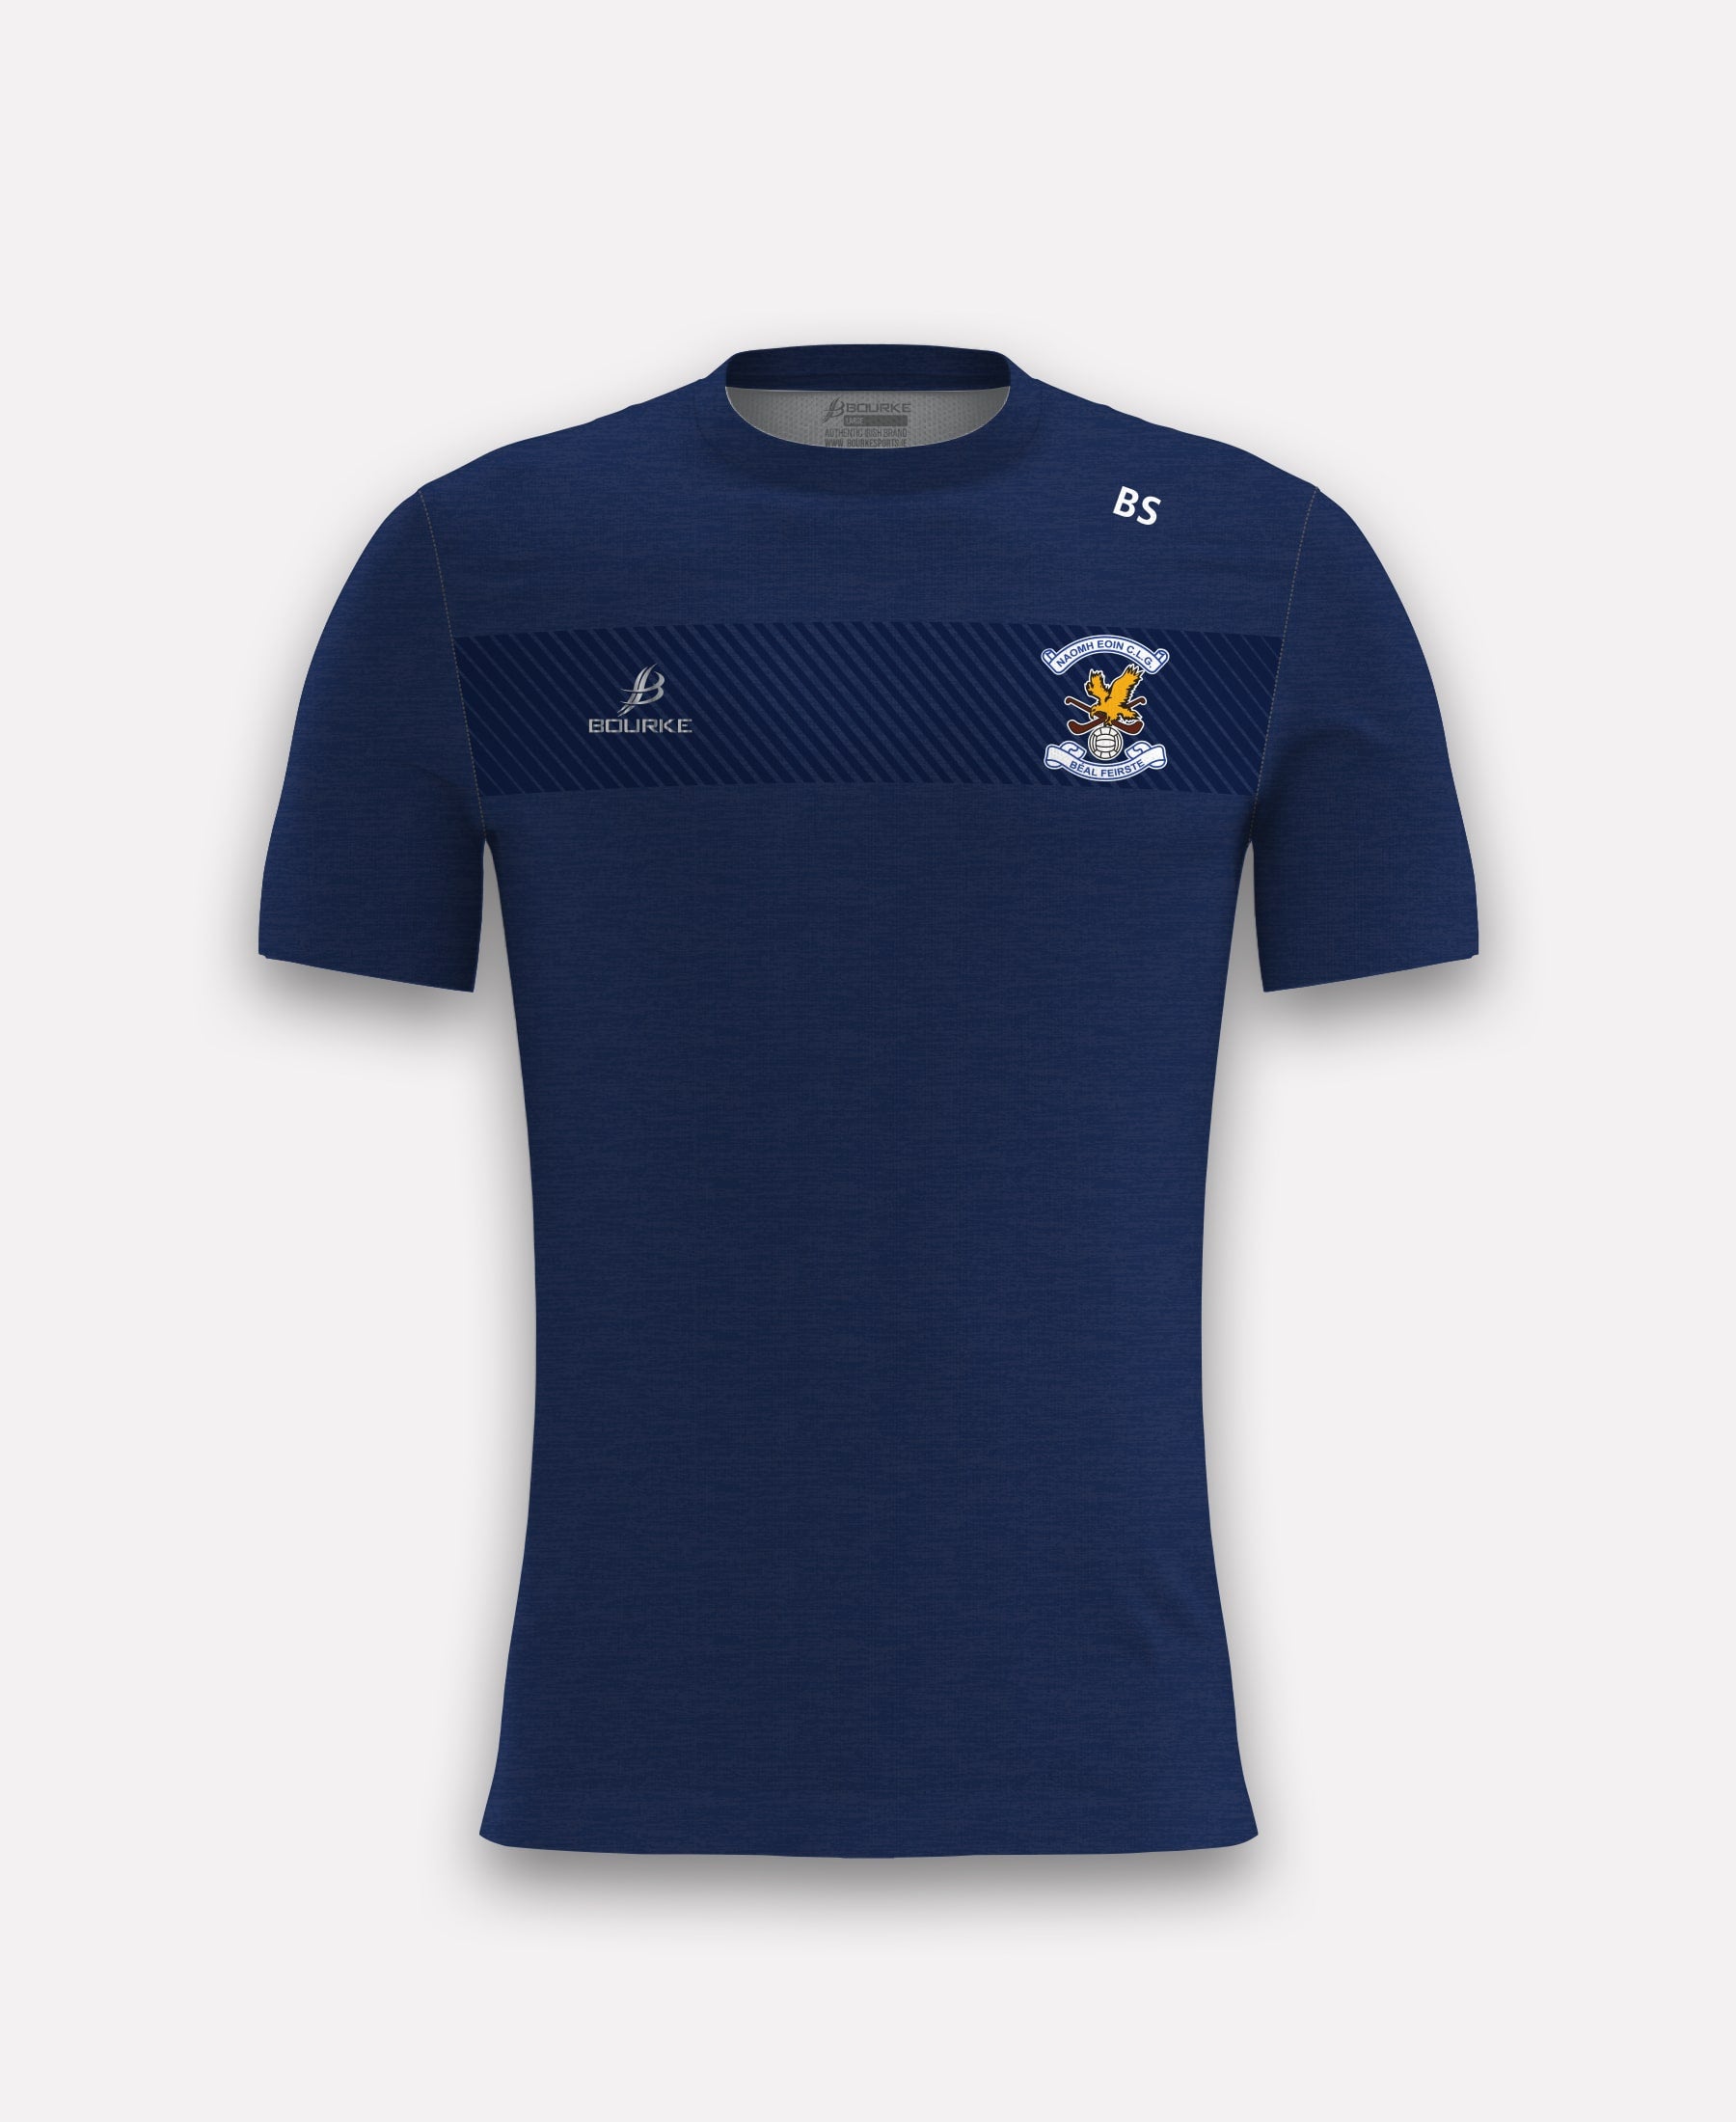 Naomh Eoin Belfast TACA T-Shirt (Navy)